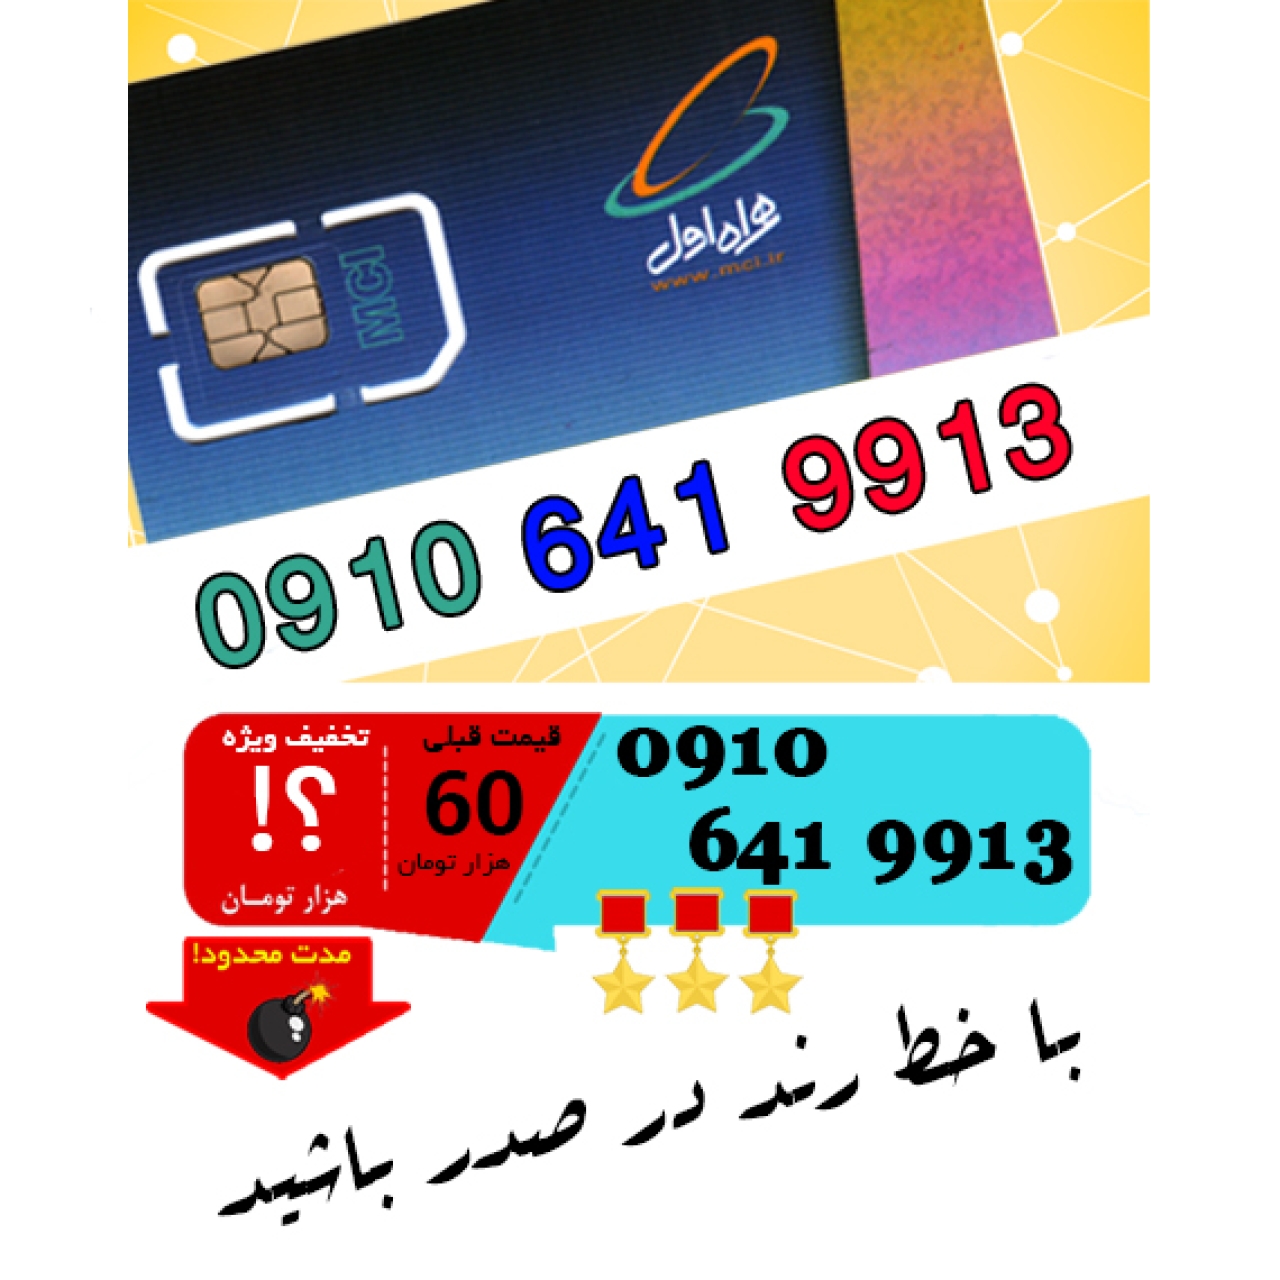 سیم کارت اعتباری رند همراه اول 09106419913